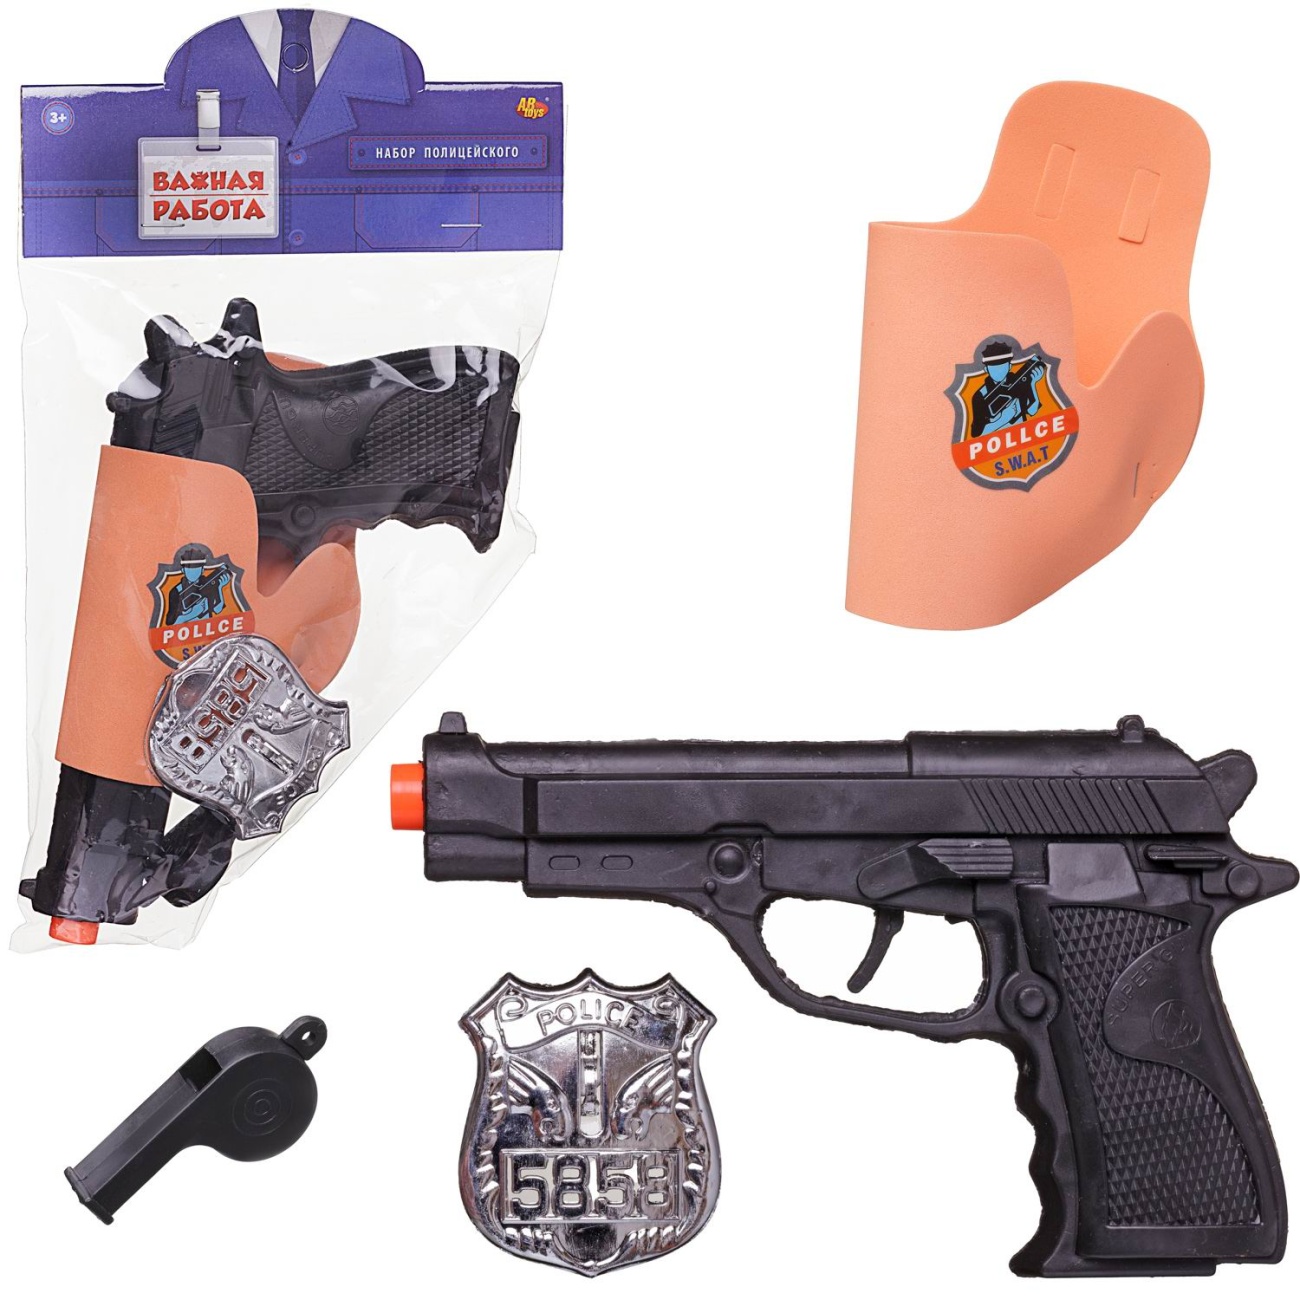 Игровой набор Abtoys Важная работа Набор полицейского: пистолет в кобуре, свисток, жетон PT-01838